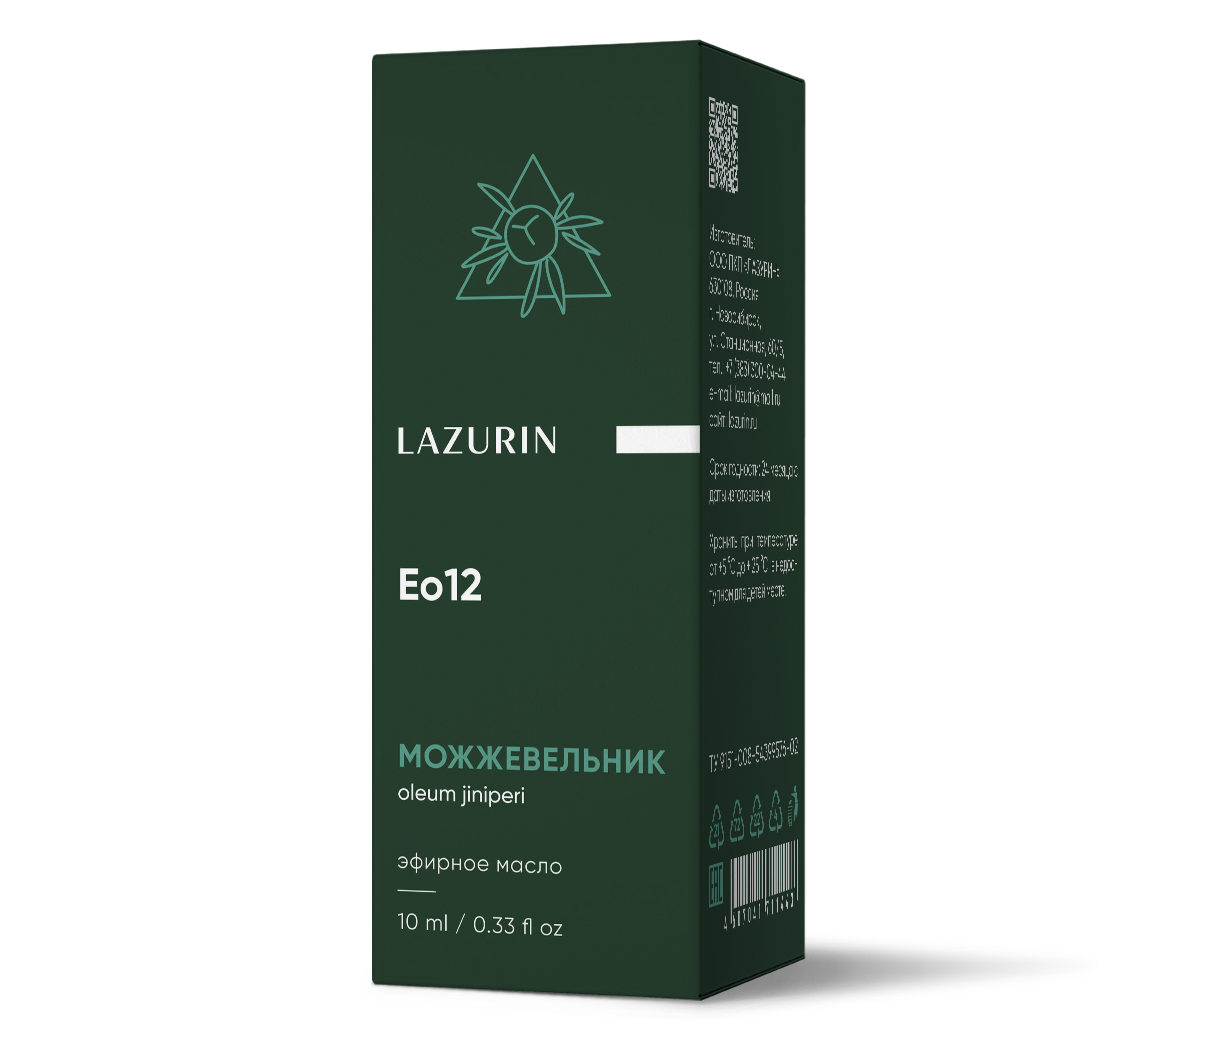 Эфирное масло Lazurin можжевельник 10мл